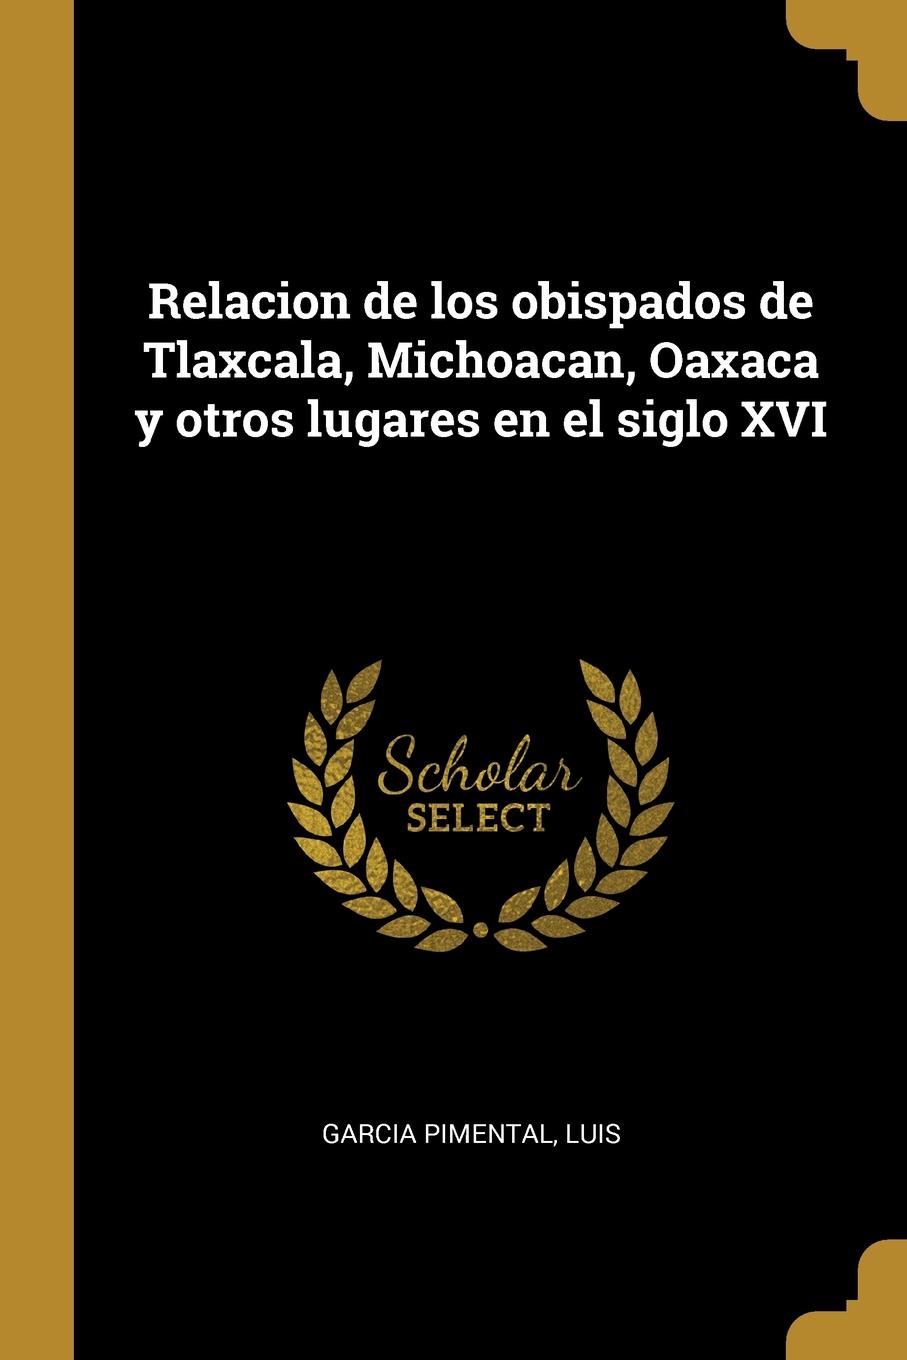 Relacion de los obispados de Tlaxcala, Michoacan, Oaxaca y otros lugares en el siglo XVI